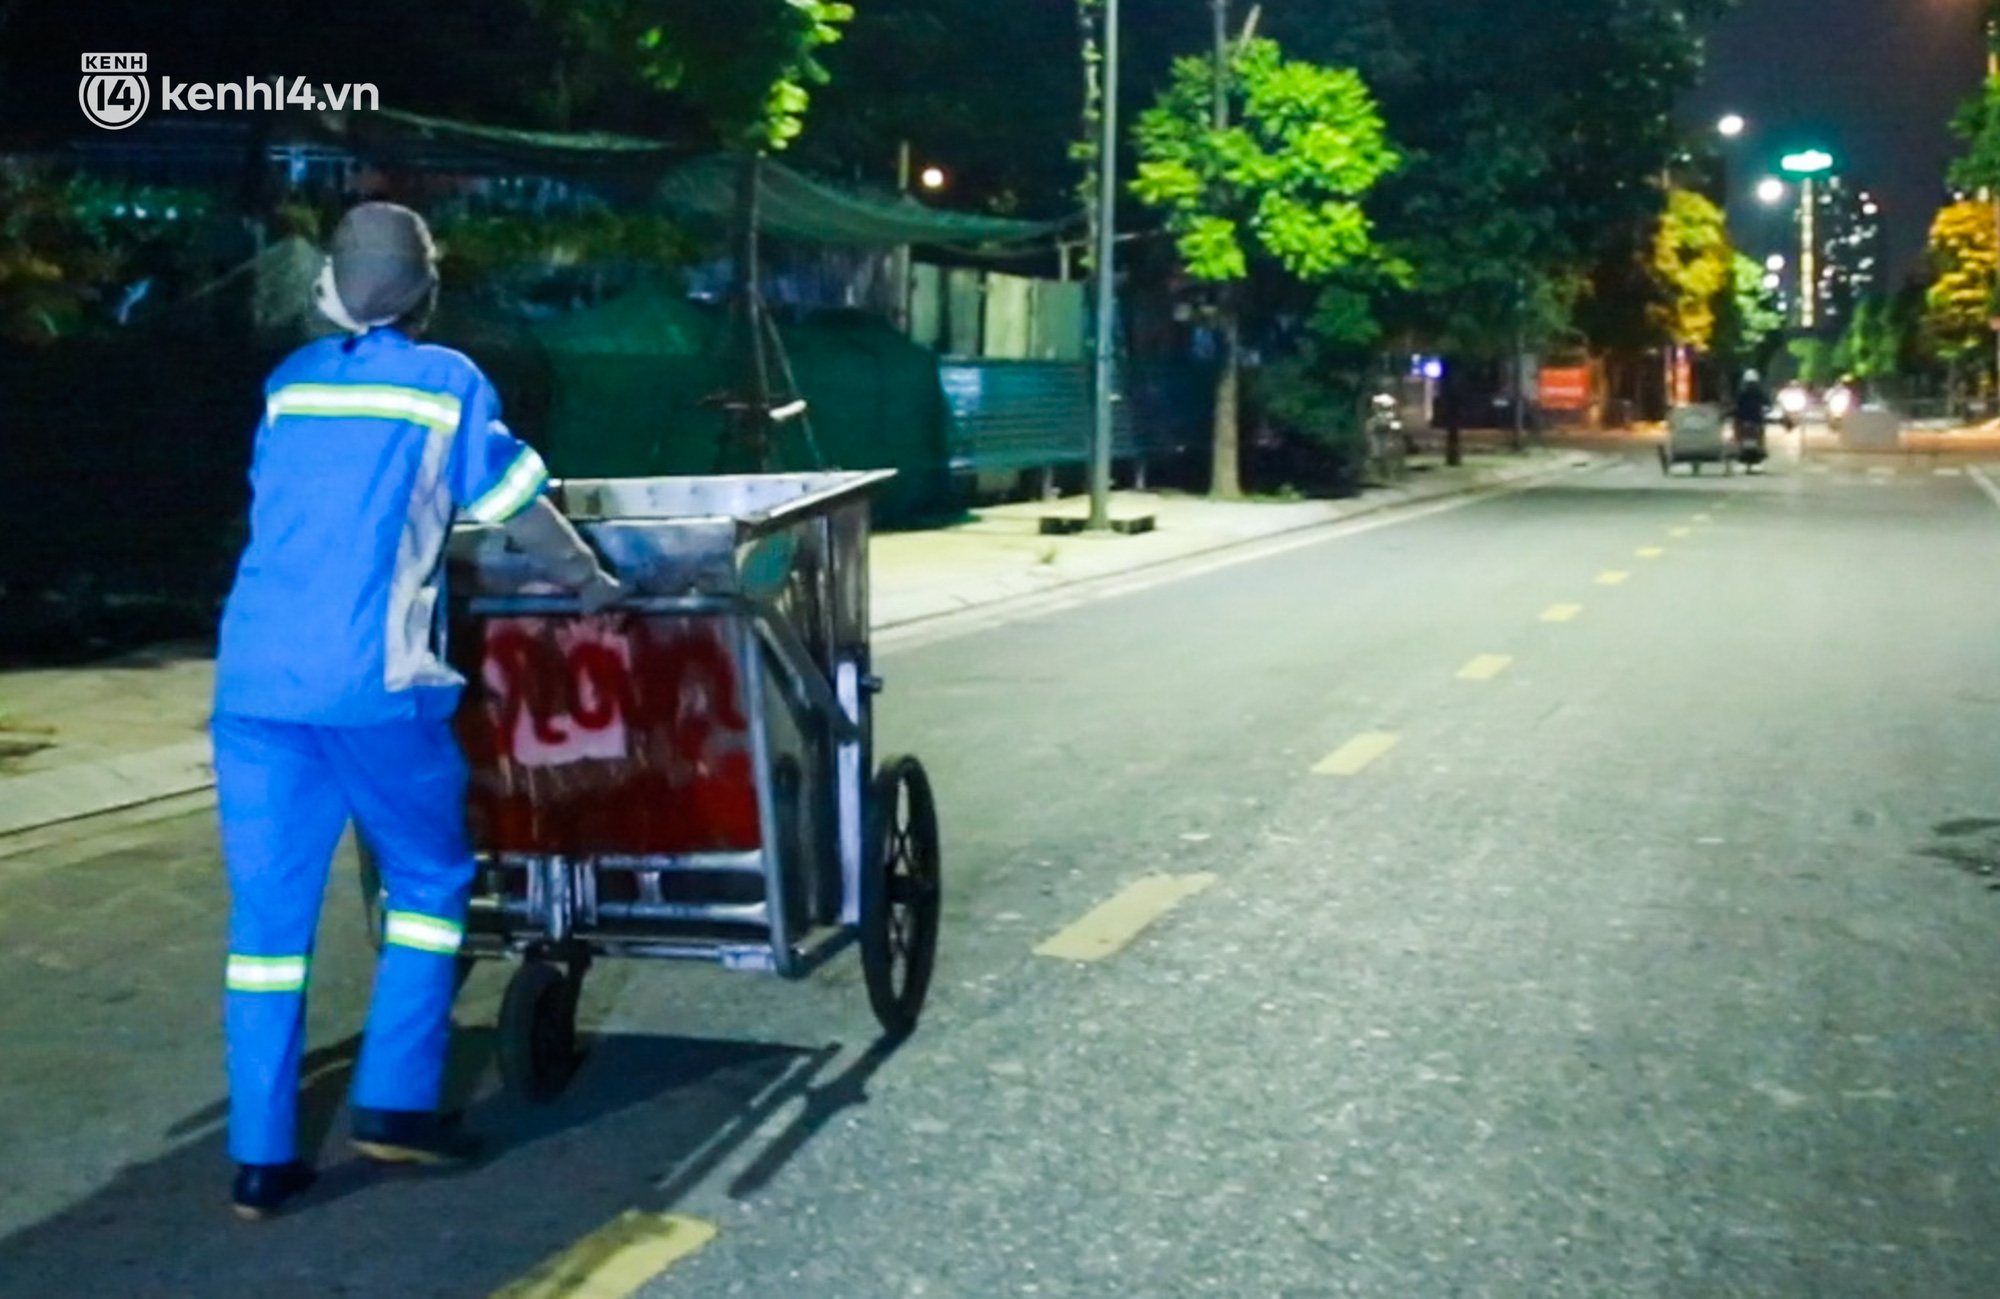 Ấm lòng: Được tặng 5 chiếc xe máy, nữ lao công ở Hà Nội bị cướp xe trong đêm đã tặng lại 2 chiếc cho đồng nghiệp - Ảnh 2.